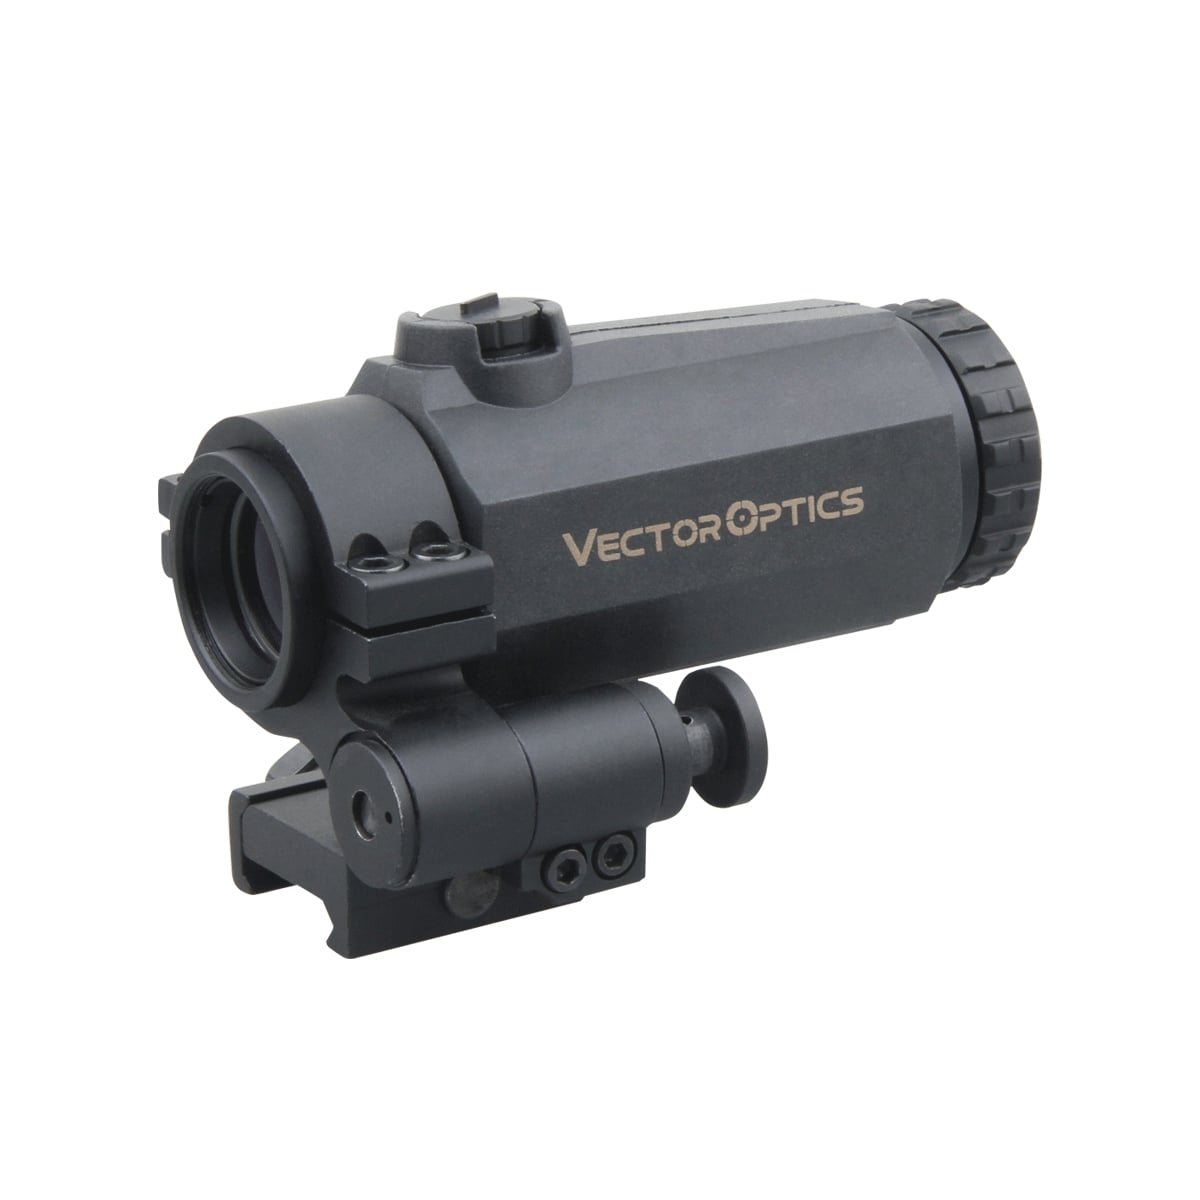 Vector Optics SCOT-07 3x magnifire